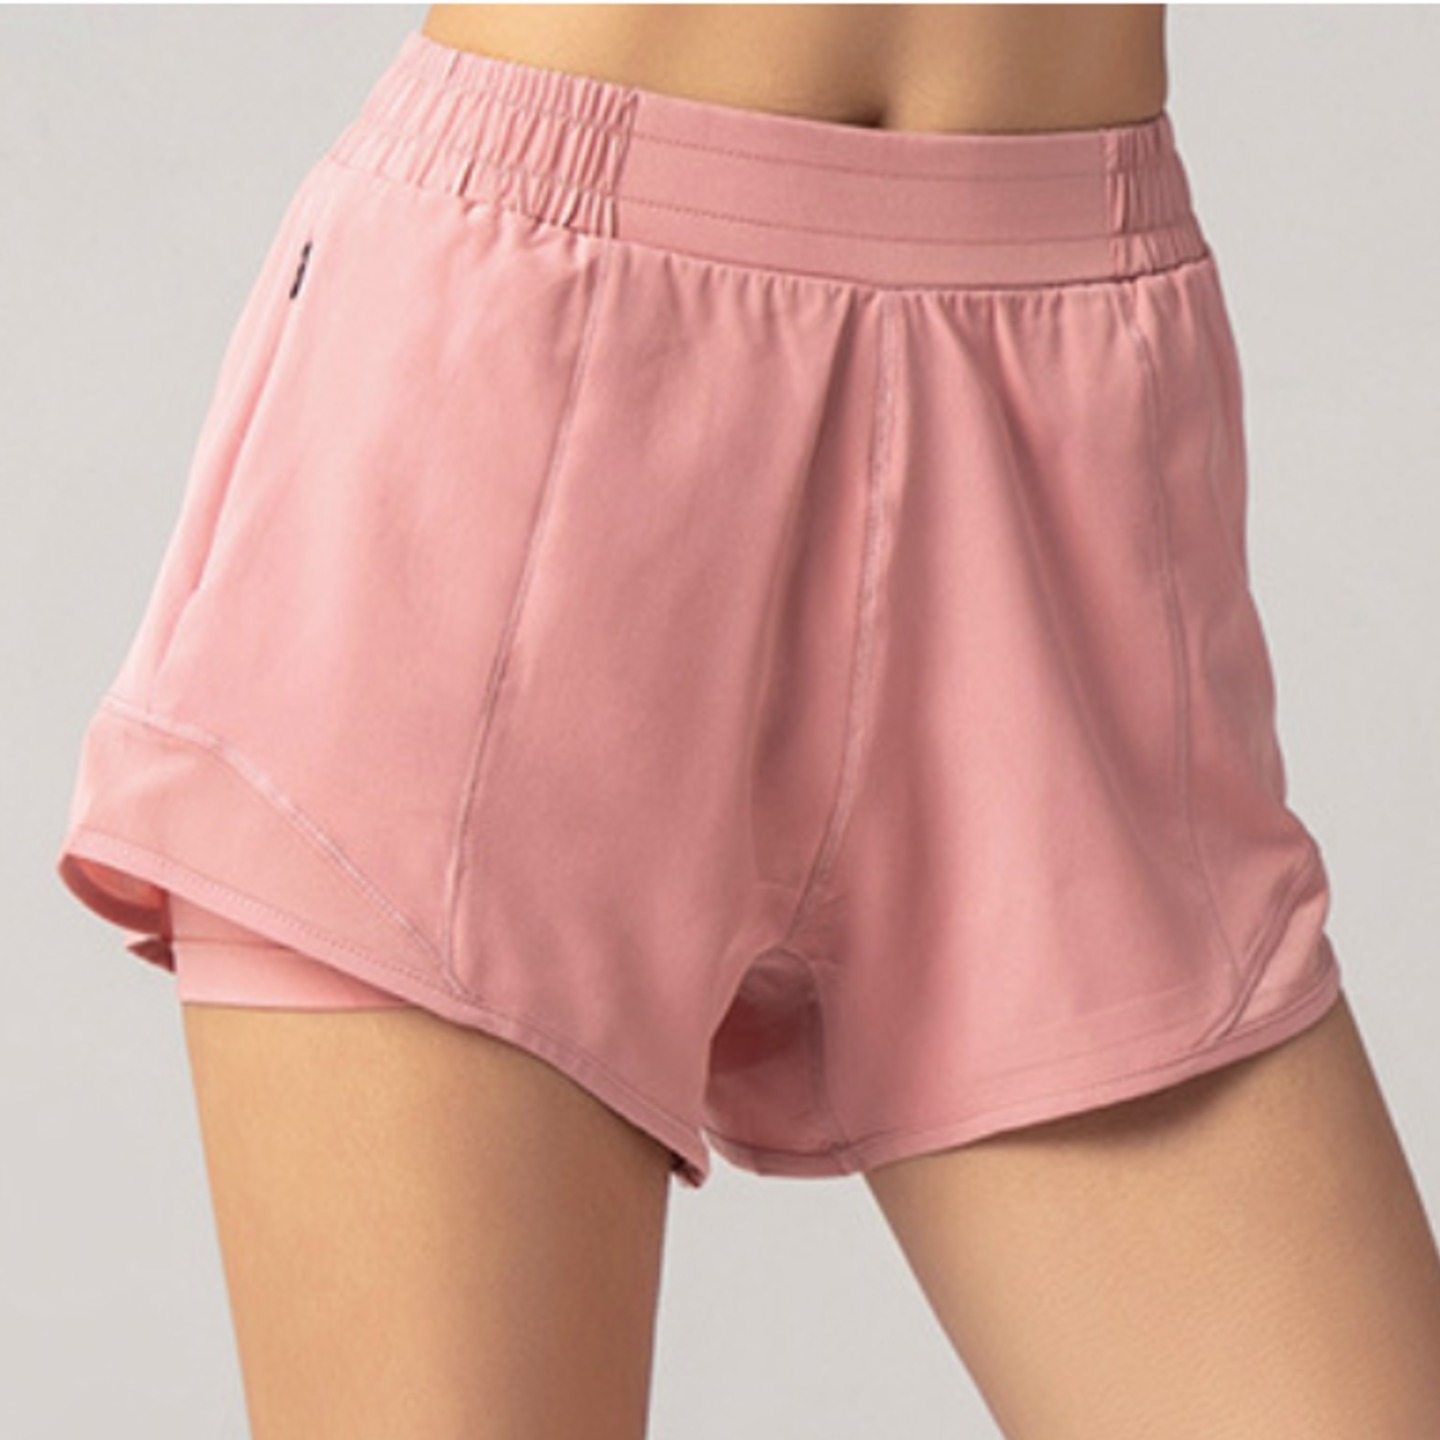 Running Shorts - Flush Pink